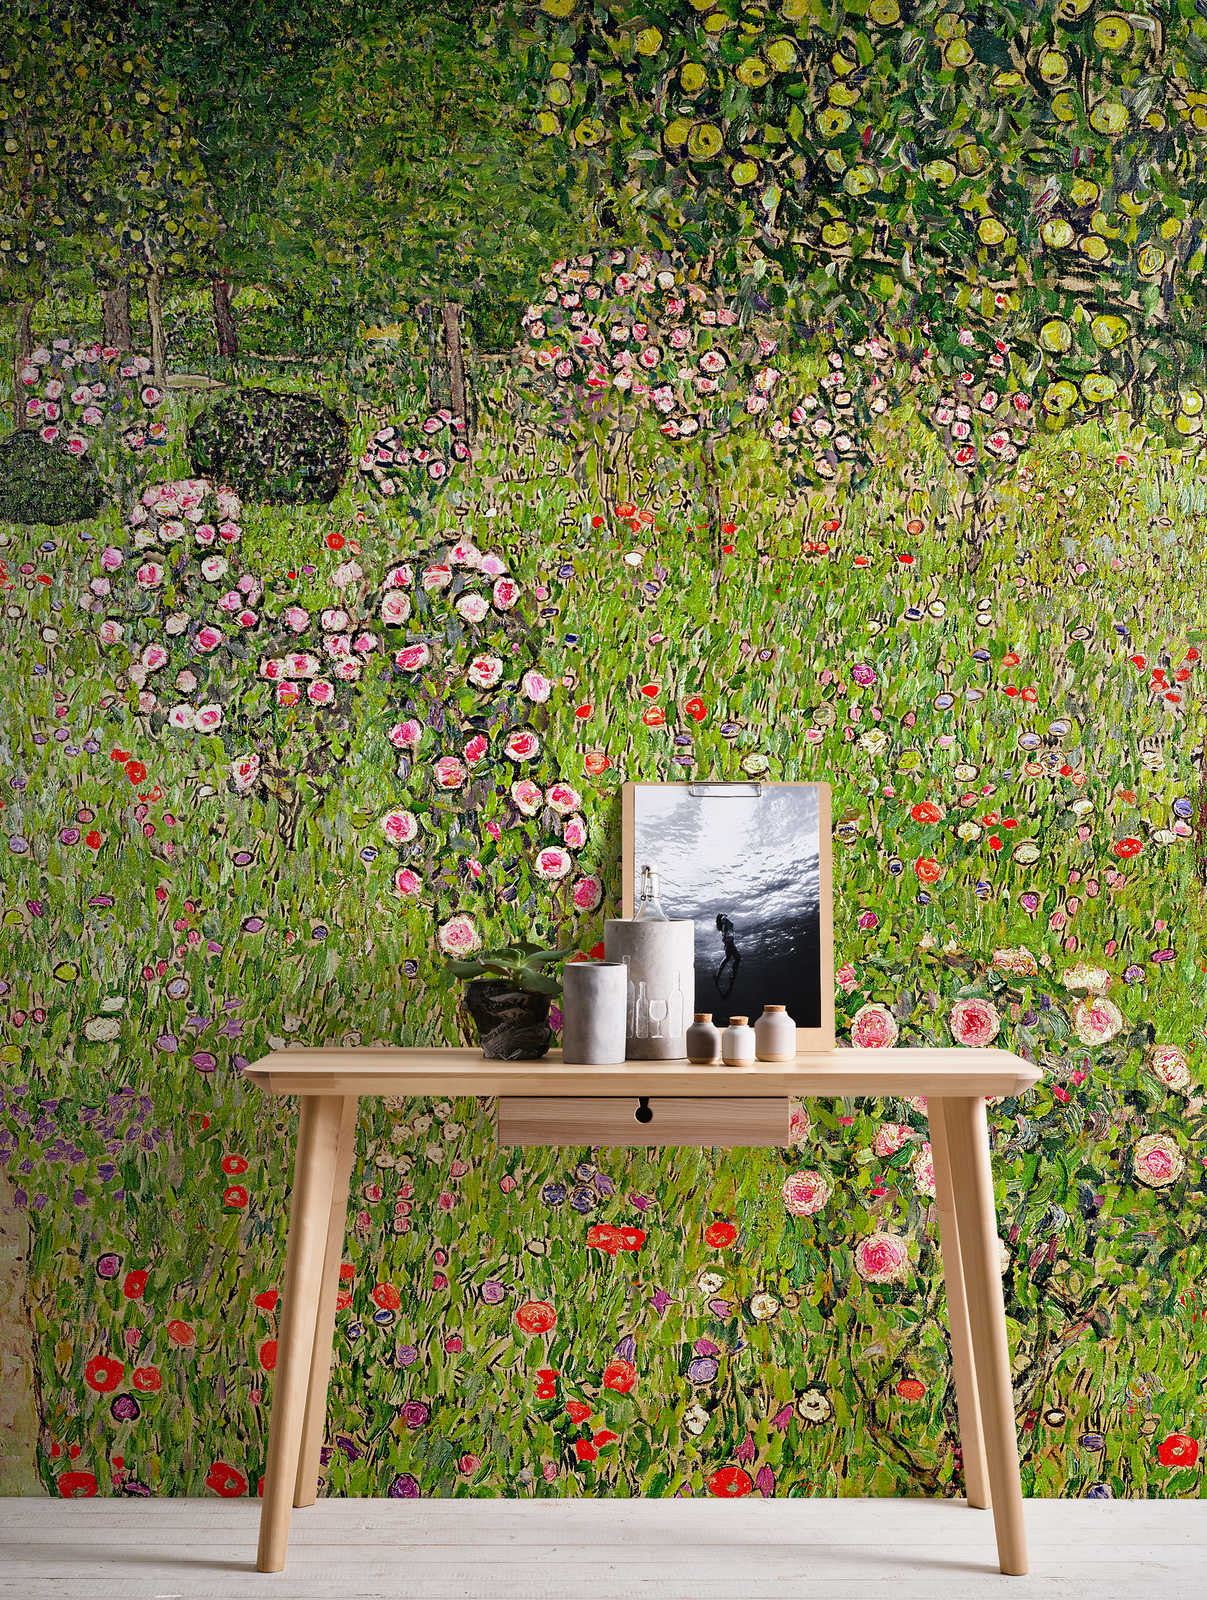             Fototapete "Obstgarten mit Rosen" von Gustav Klimt
        